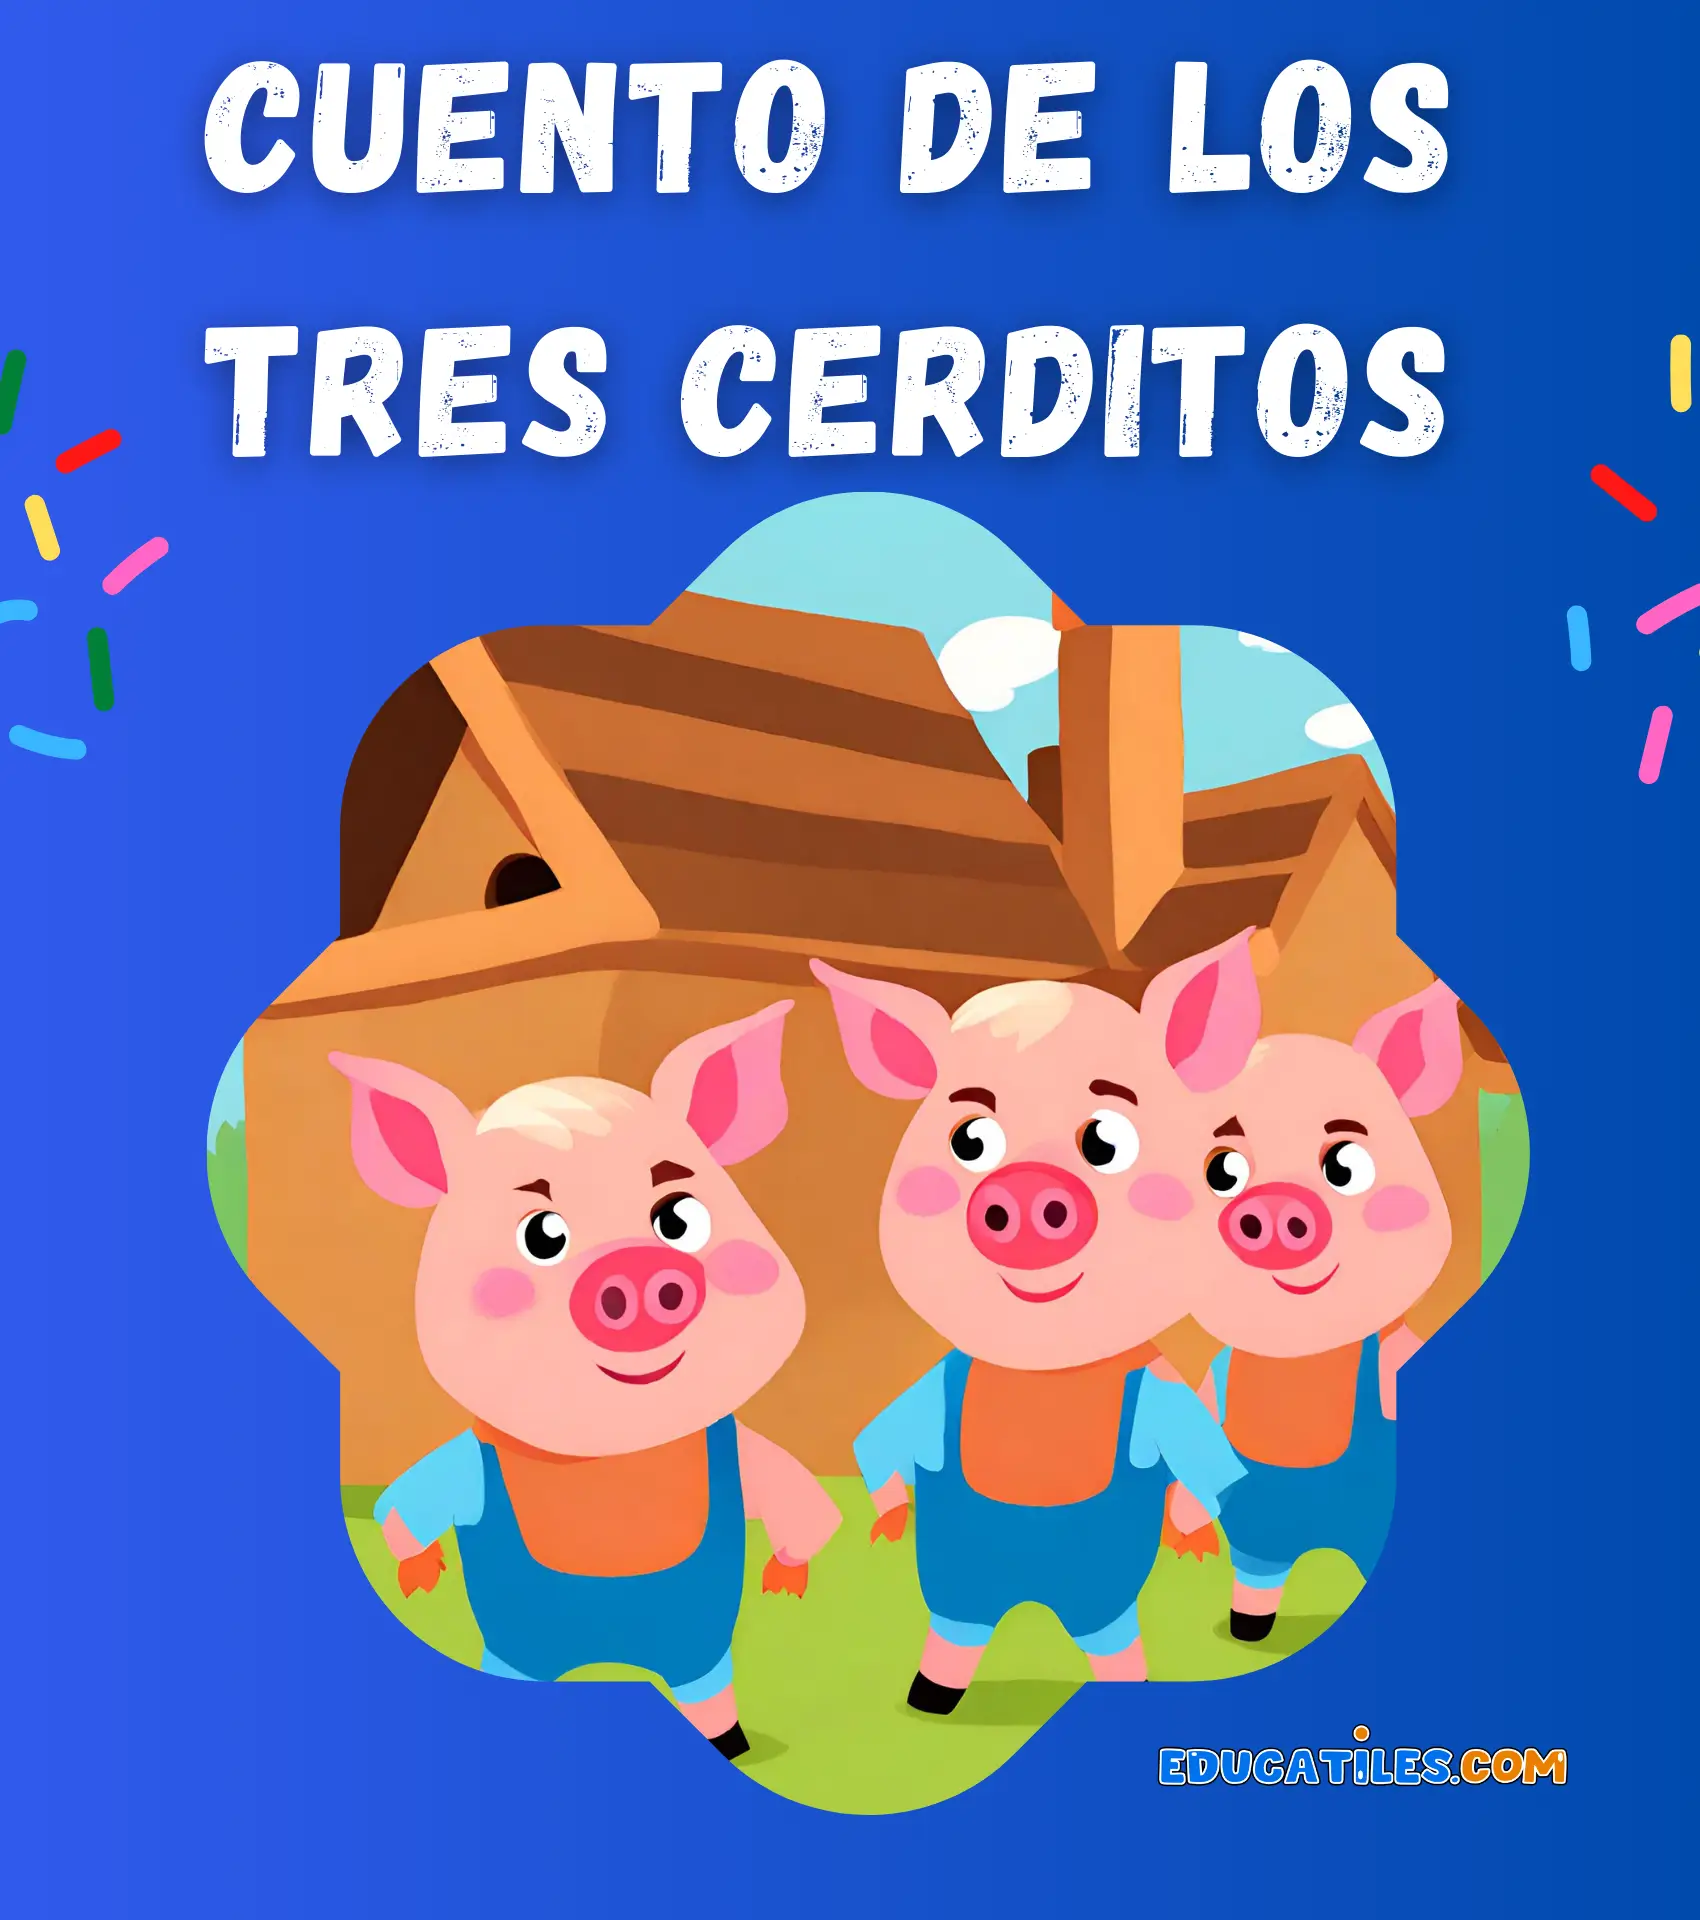 Cuento de los tres cerditos - Cuentos en español, Materiales educativos,  Historias cortas para niños y Orientación familiar